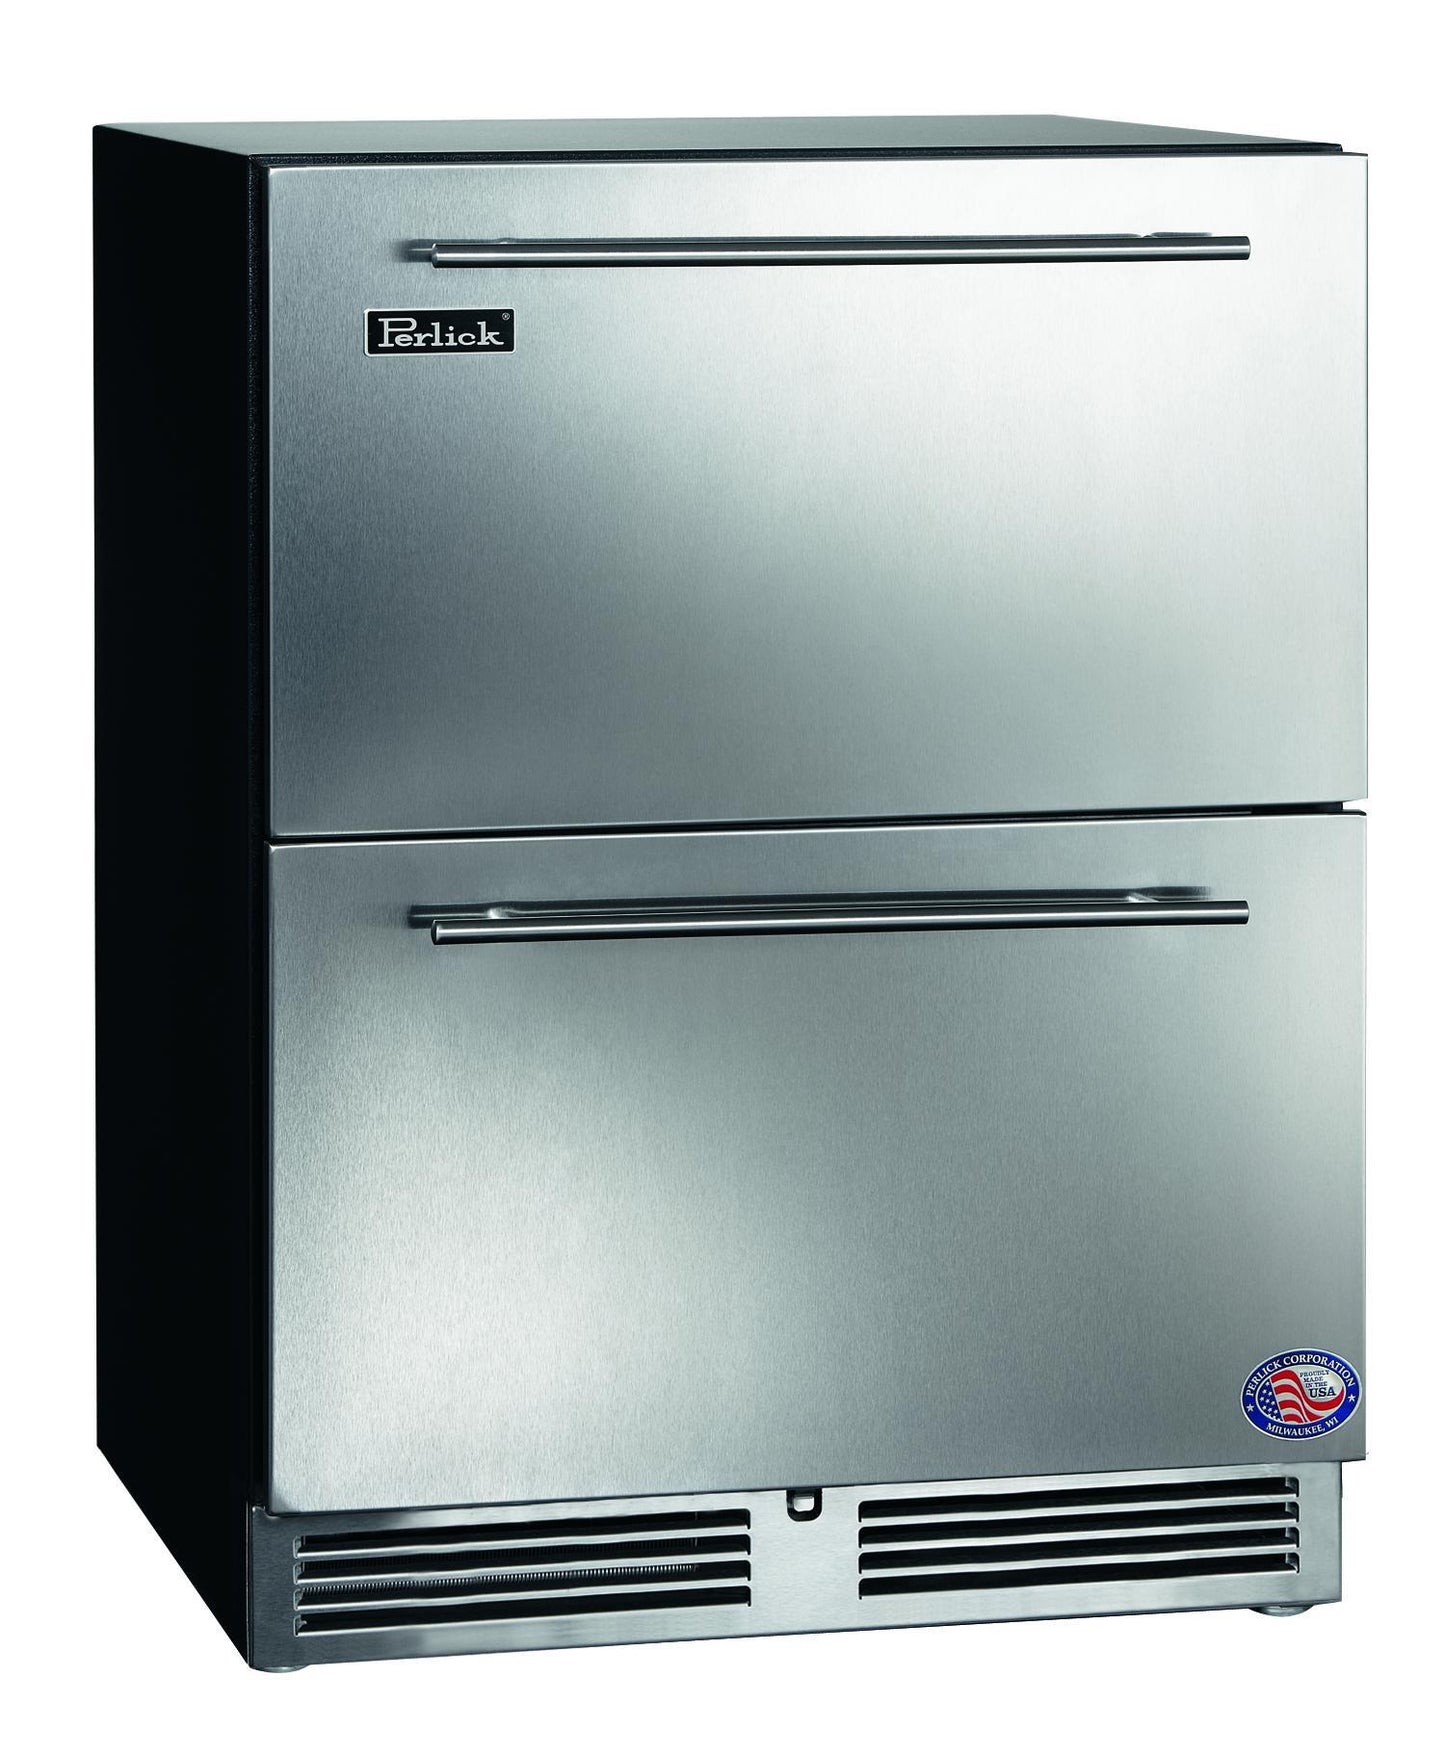 Perlick HA24RB45 24" Ada Compliant Refrigerator